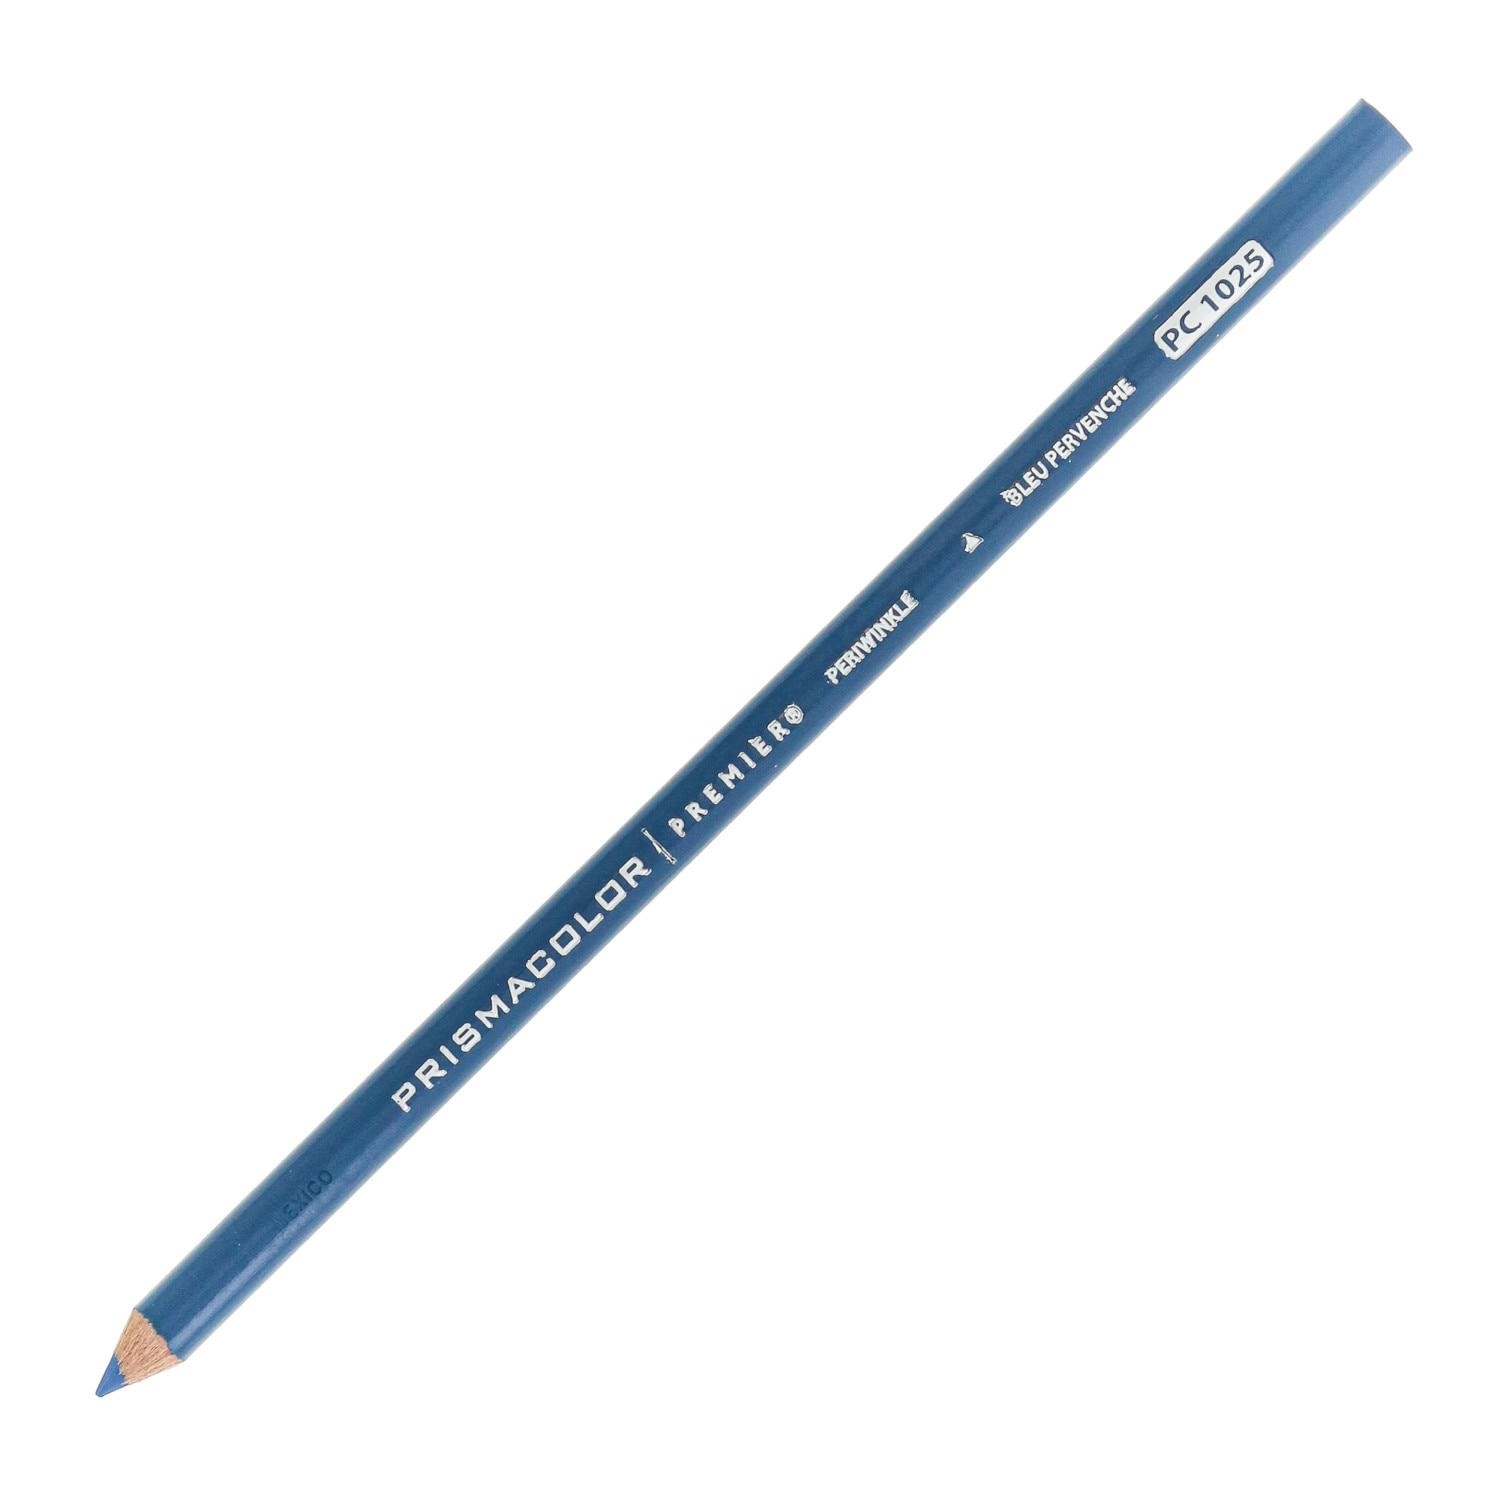 Prismacolor Premier Thick Core Colored Pencil, Periwinkle